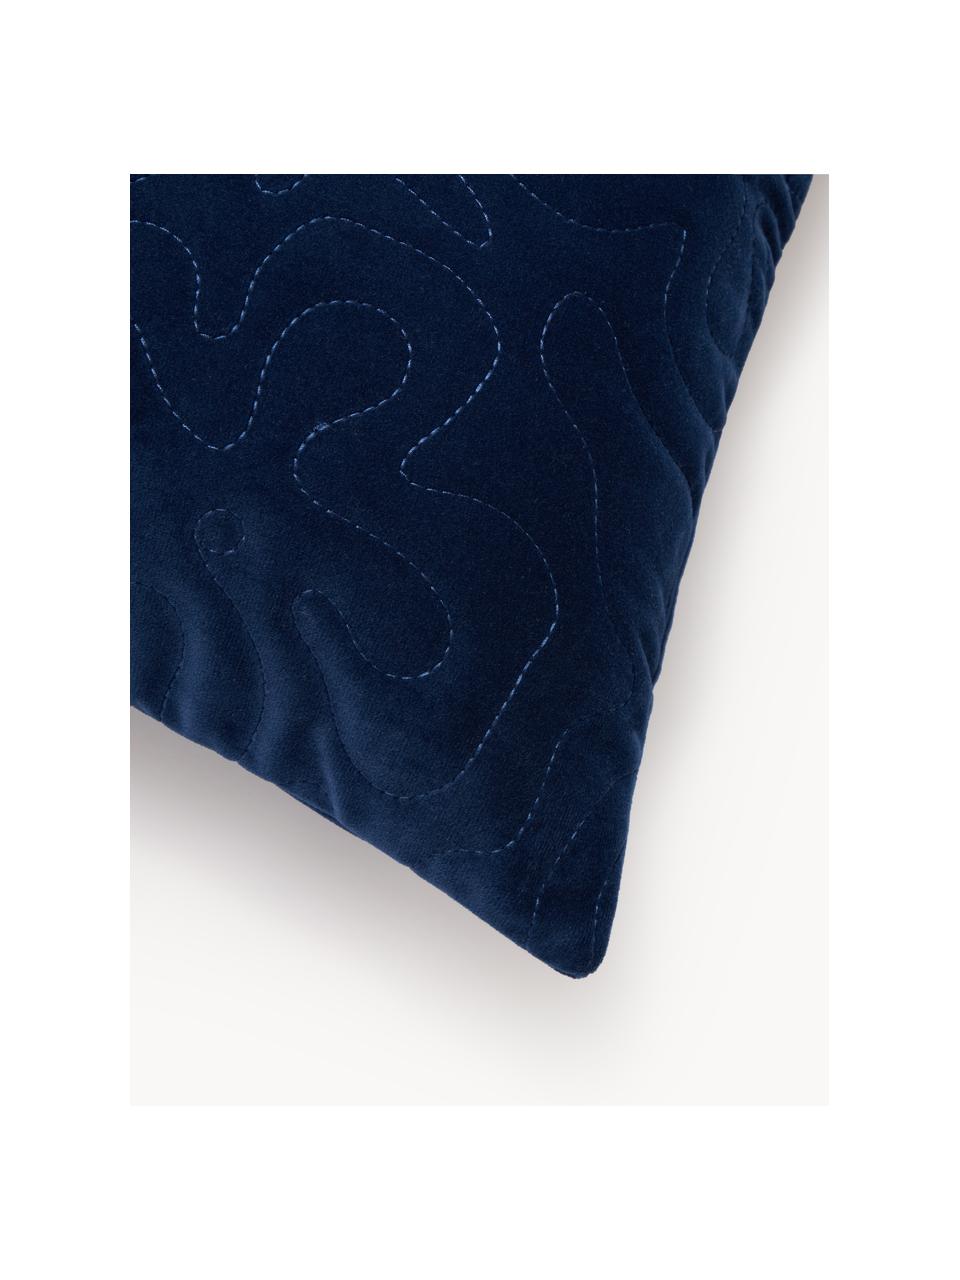 Housse de coussin en velours Hera, 100 % polyester recyclé, Bleu foncé, larg. 45 x long. 45 cm